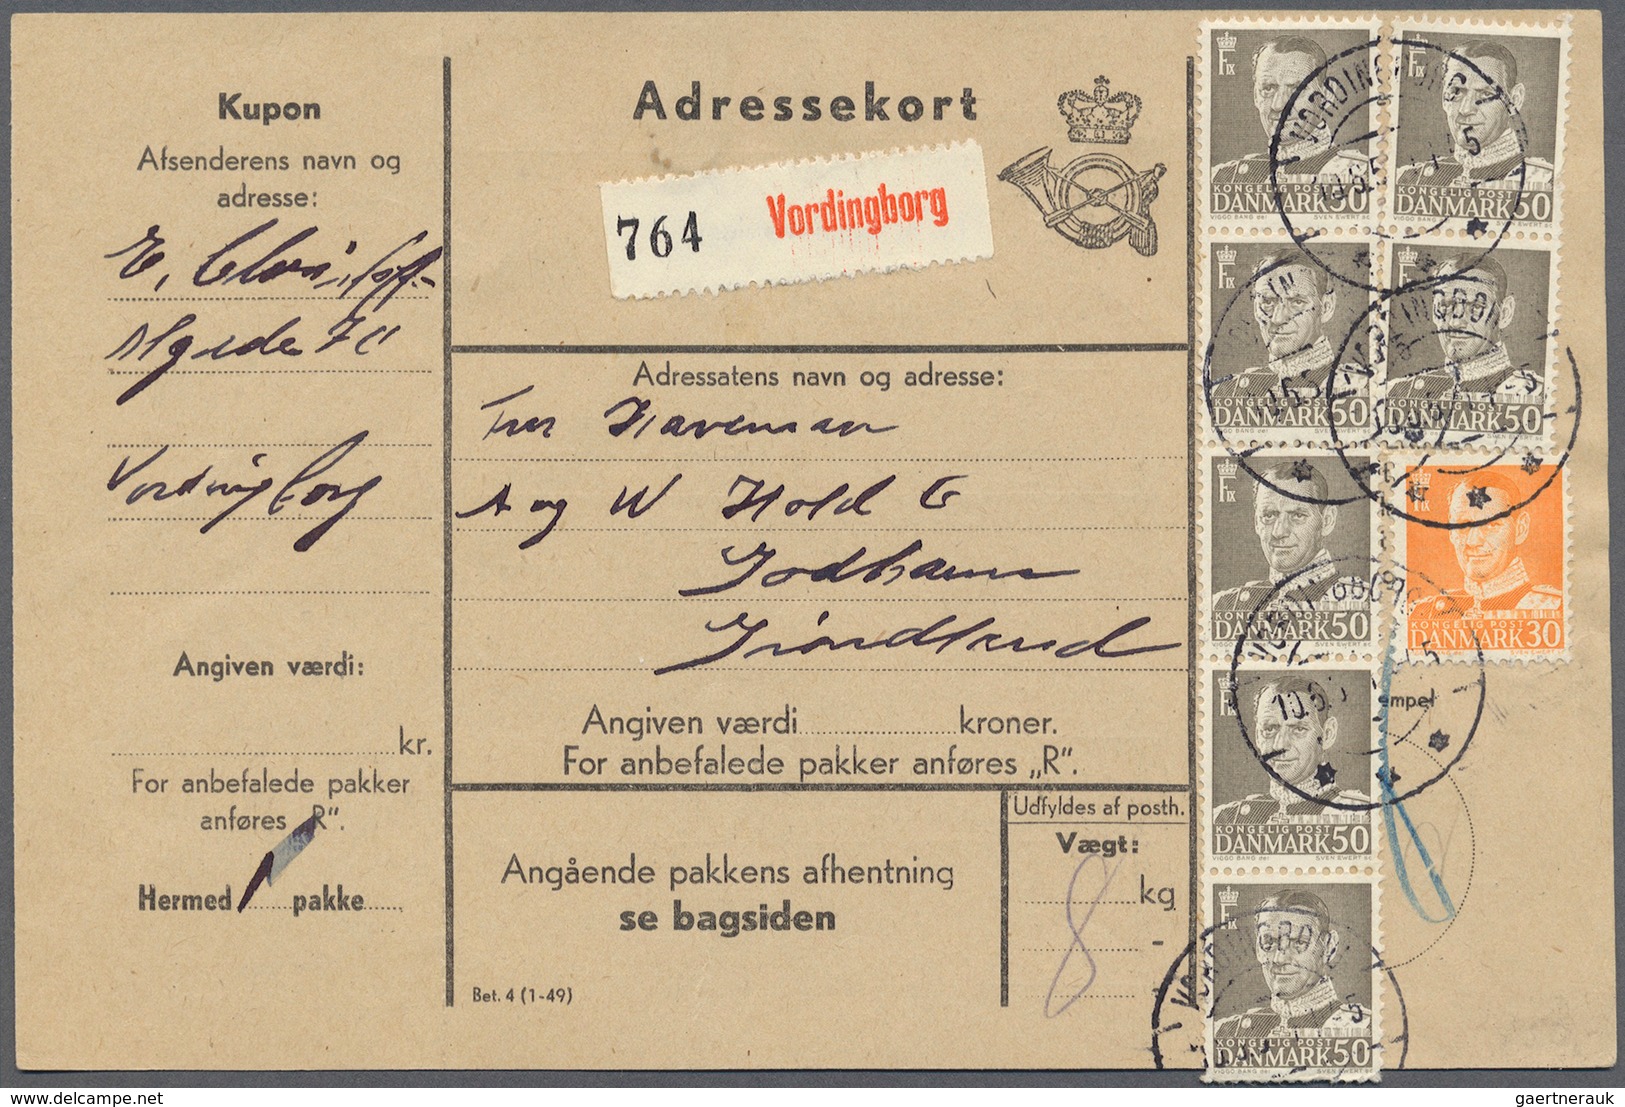 26239 Dänemark: 1915 (ab), kleiner Posten von 68 Belegen, teils mit Besonderheiten wie Flugpost, Färöer un